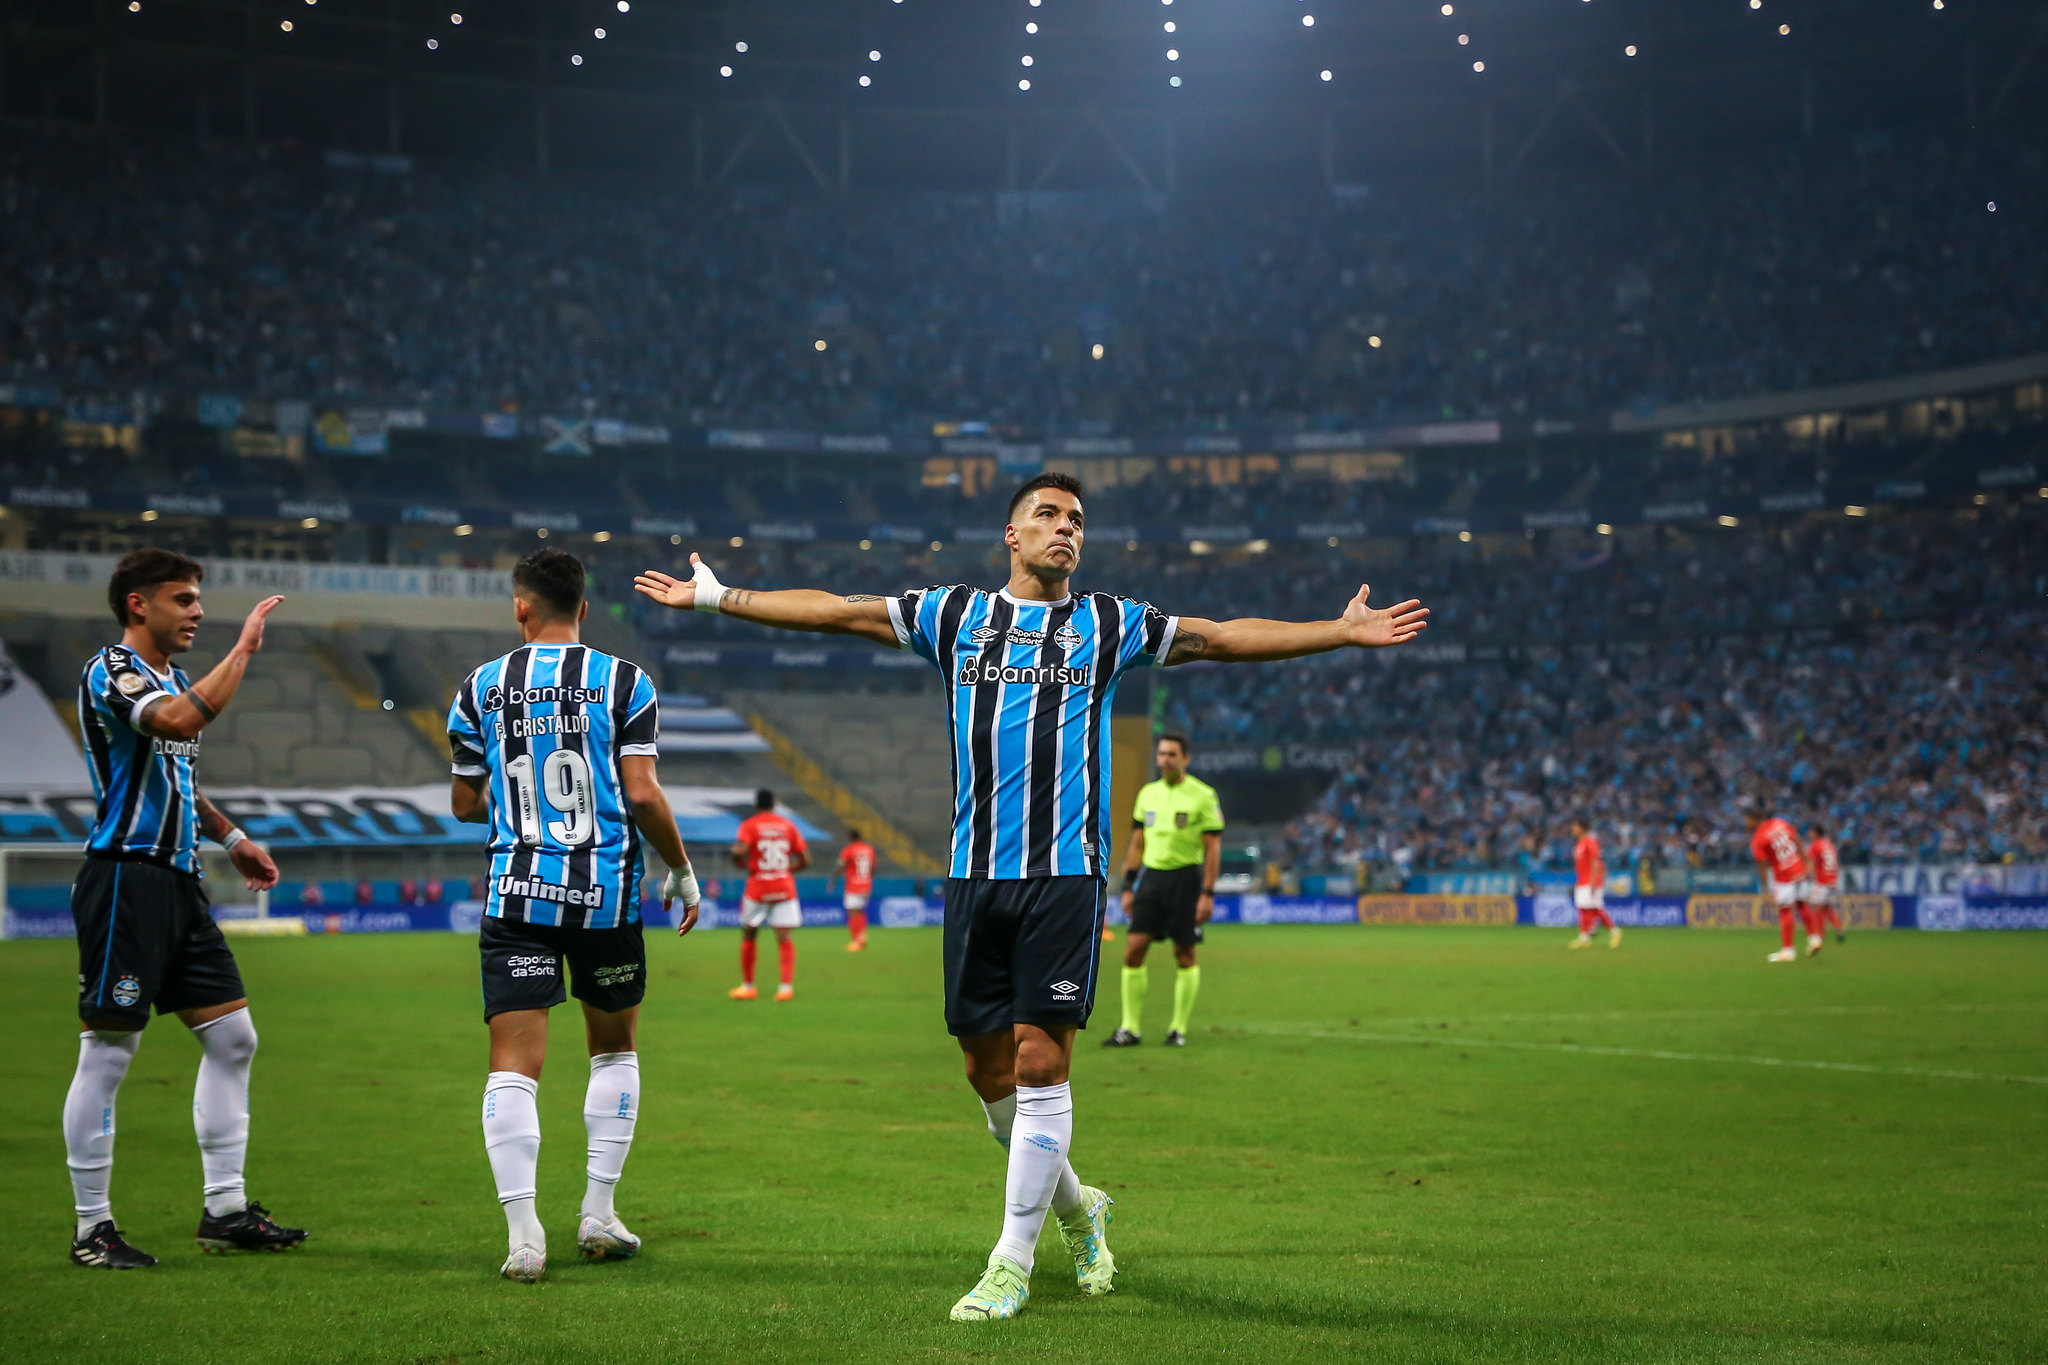 Suárez é o artilheiro do Grêmio (Foto: Divulgação/Grêmio)